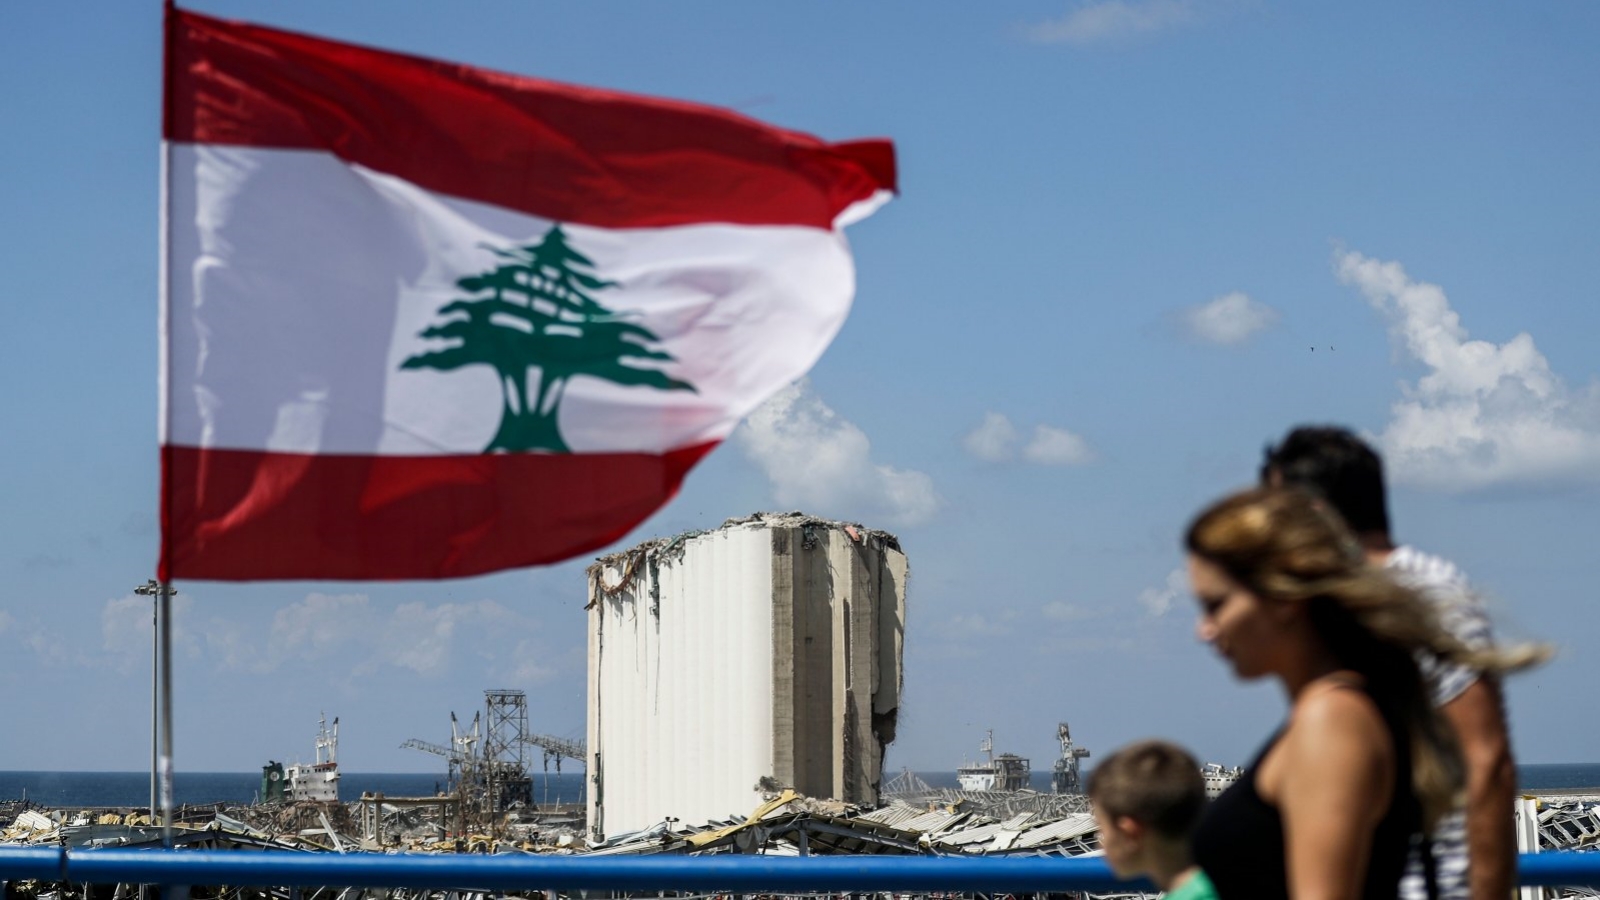 مواطنون يمشون على جسر أمام العلم اللبناني بالقرب من ميناء العاصمة اللبنانية بيروت. حيث تظهر إهراءات الحبوب المدمرة بفعل الإنفجار في الخلفية. 9 آب/أغسطس 2020.